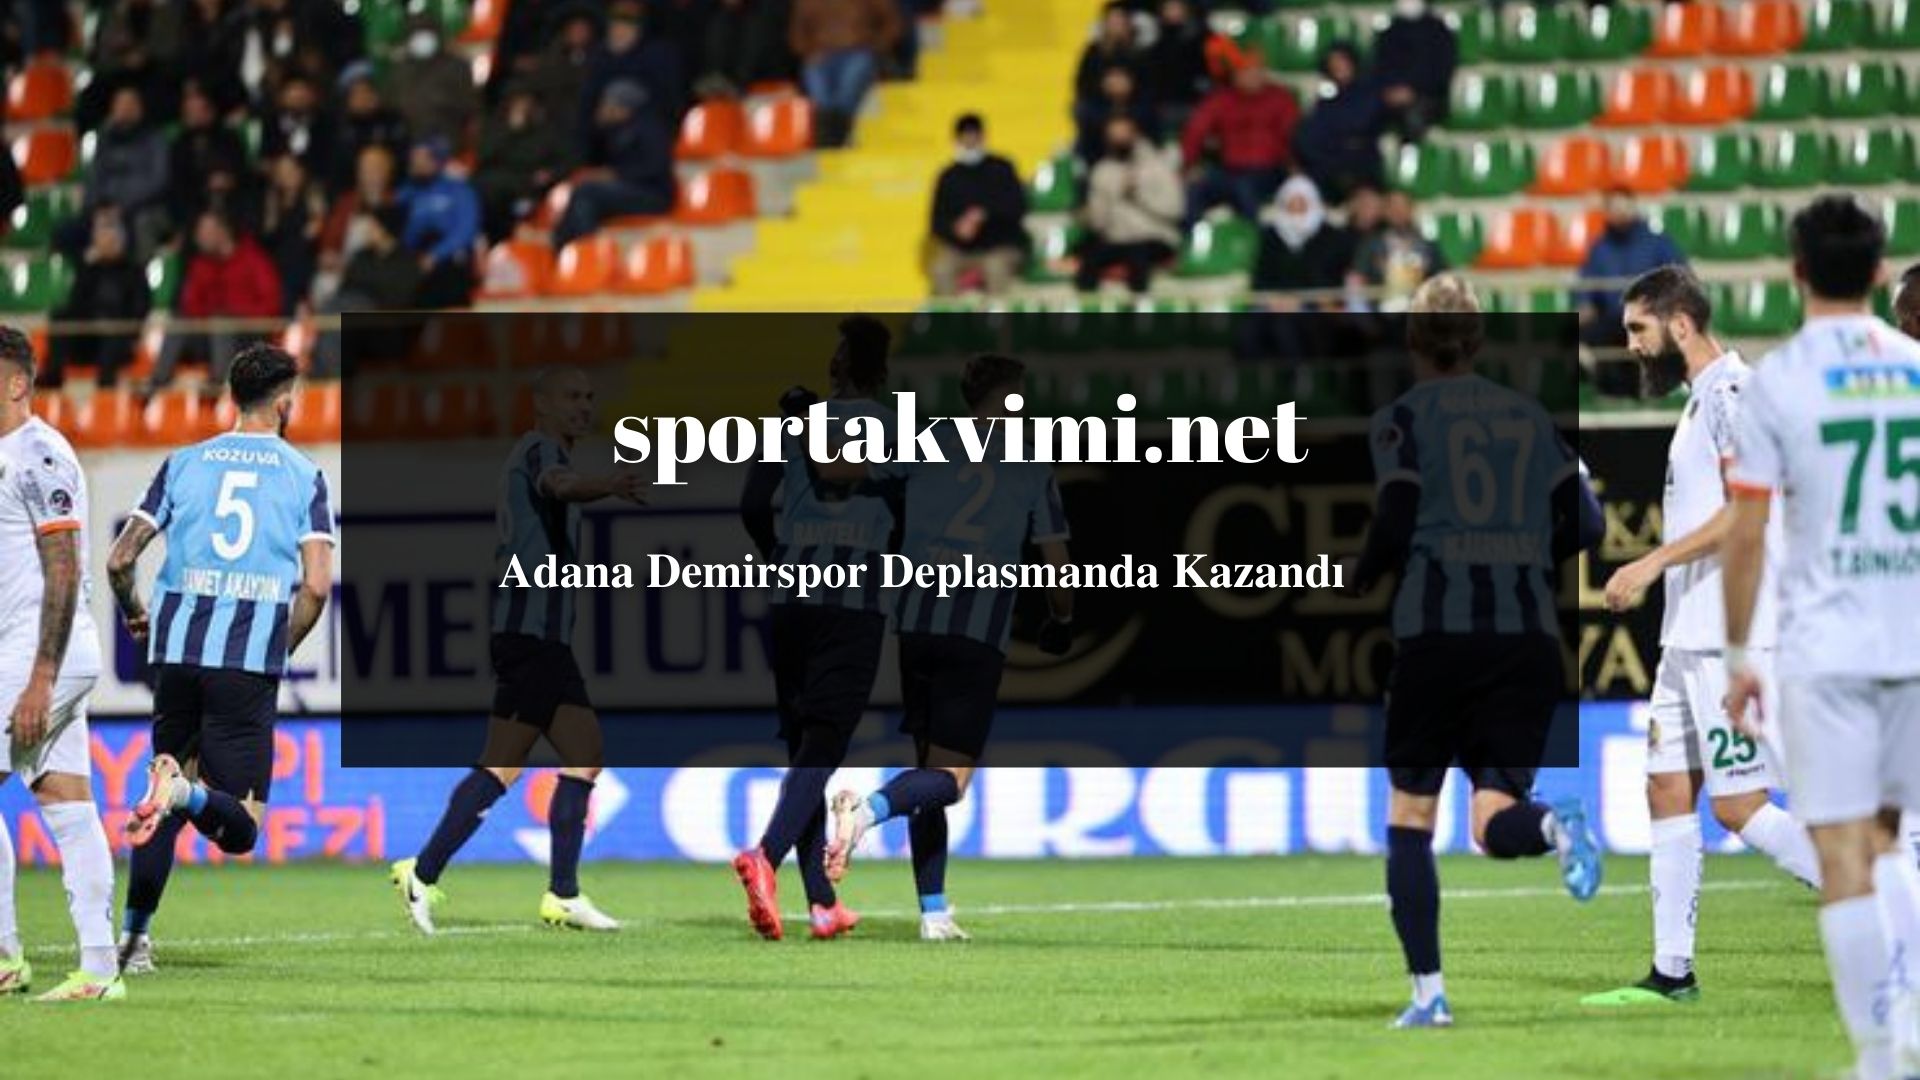 Adana Demirspor Deplasmanda Kazandı